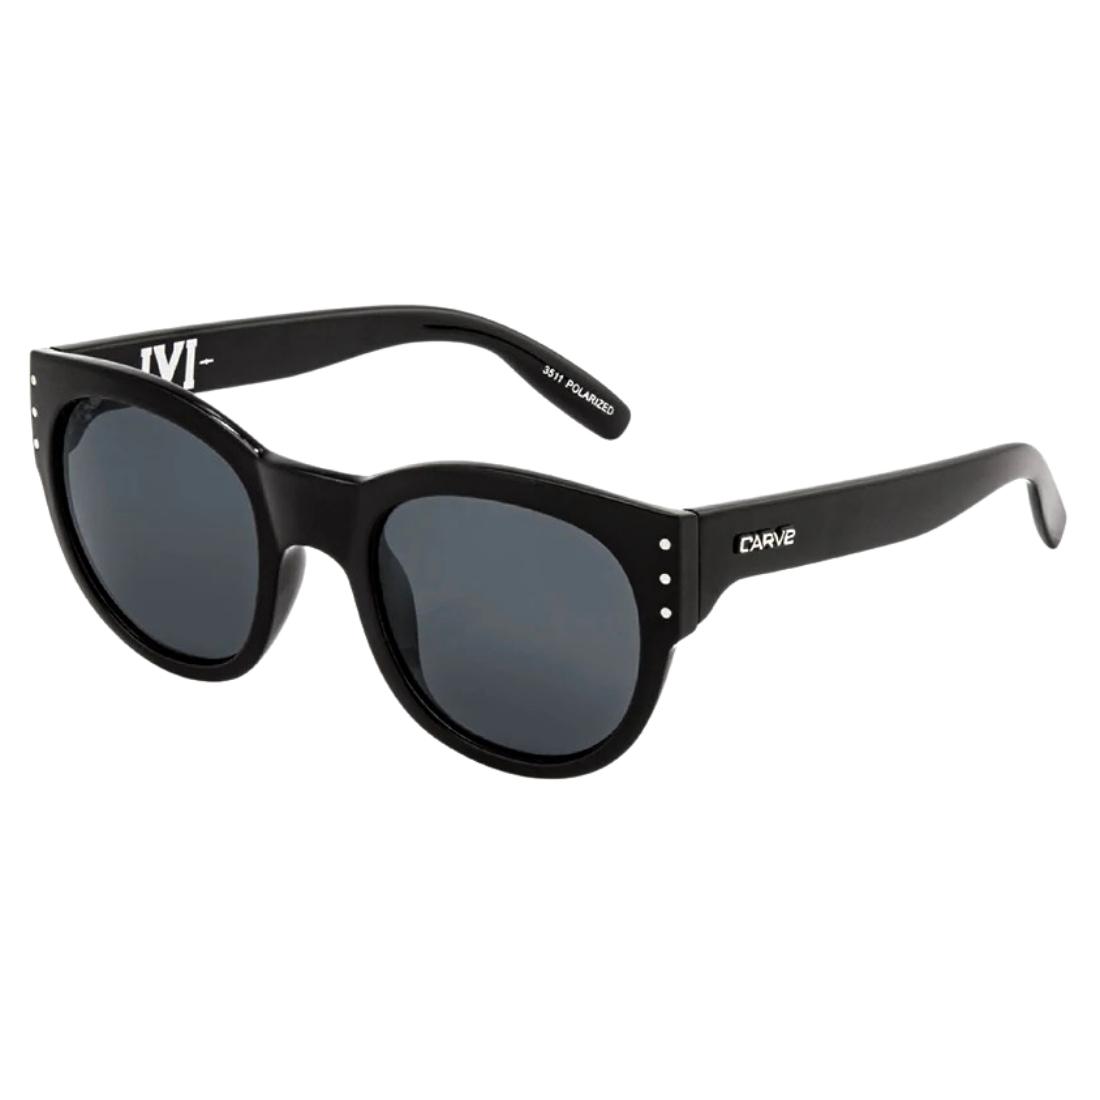 Carve Ivi Polarised Sunglasses - Gloss Black Polarised